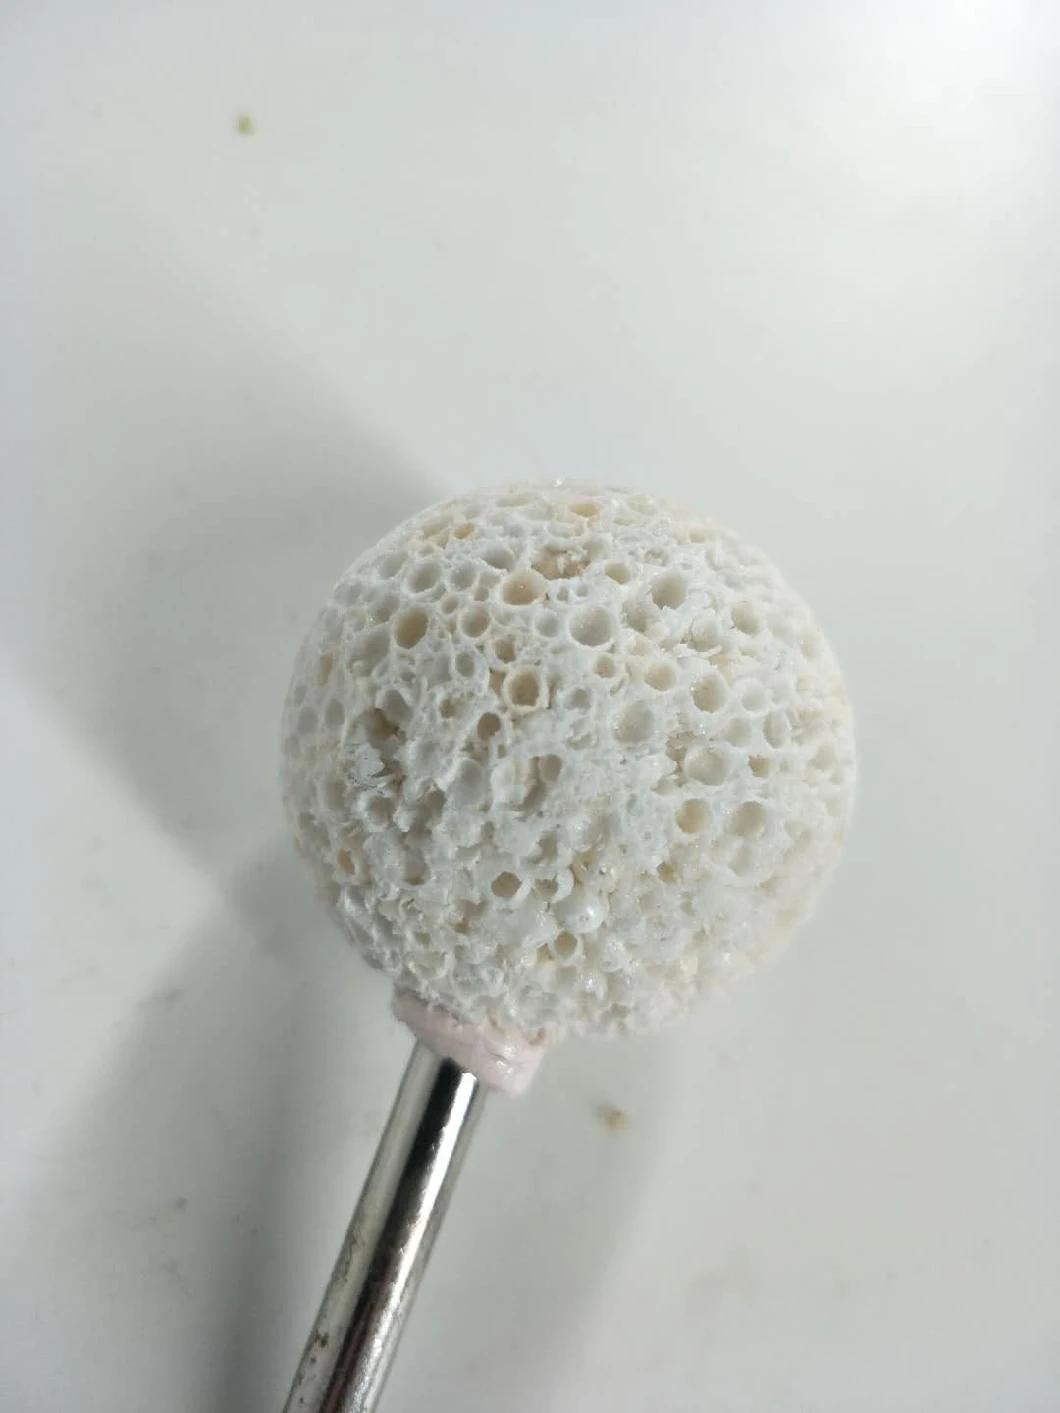 Spherical Rasp Golf Ball Max Rpm 4500